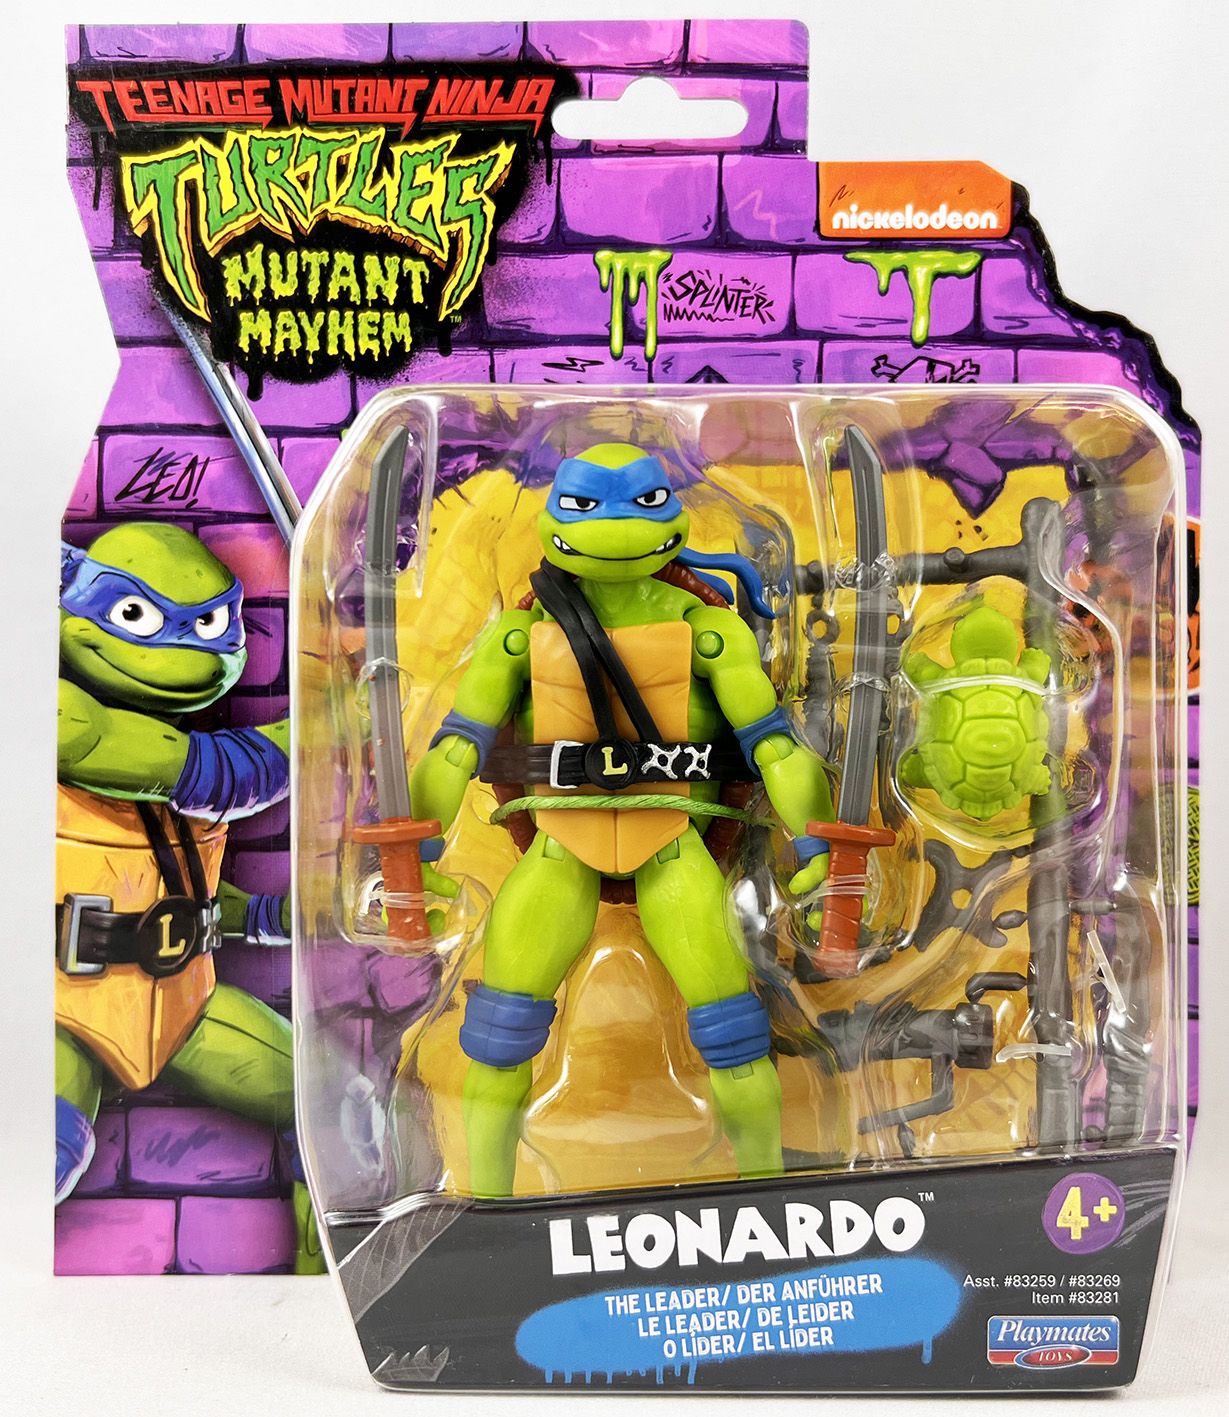 Teenage Mutant Ninja Turtles: Mutant Mayhem Movie - Playmates - Leonardo